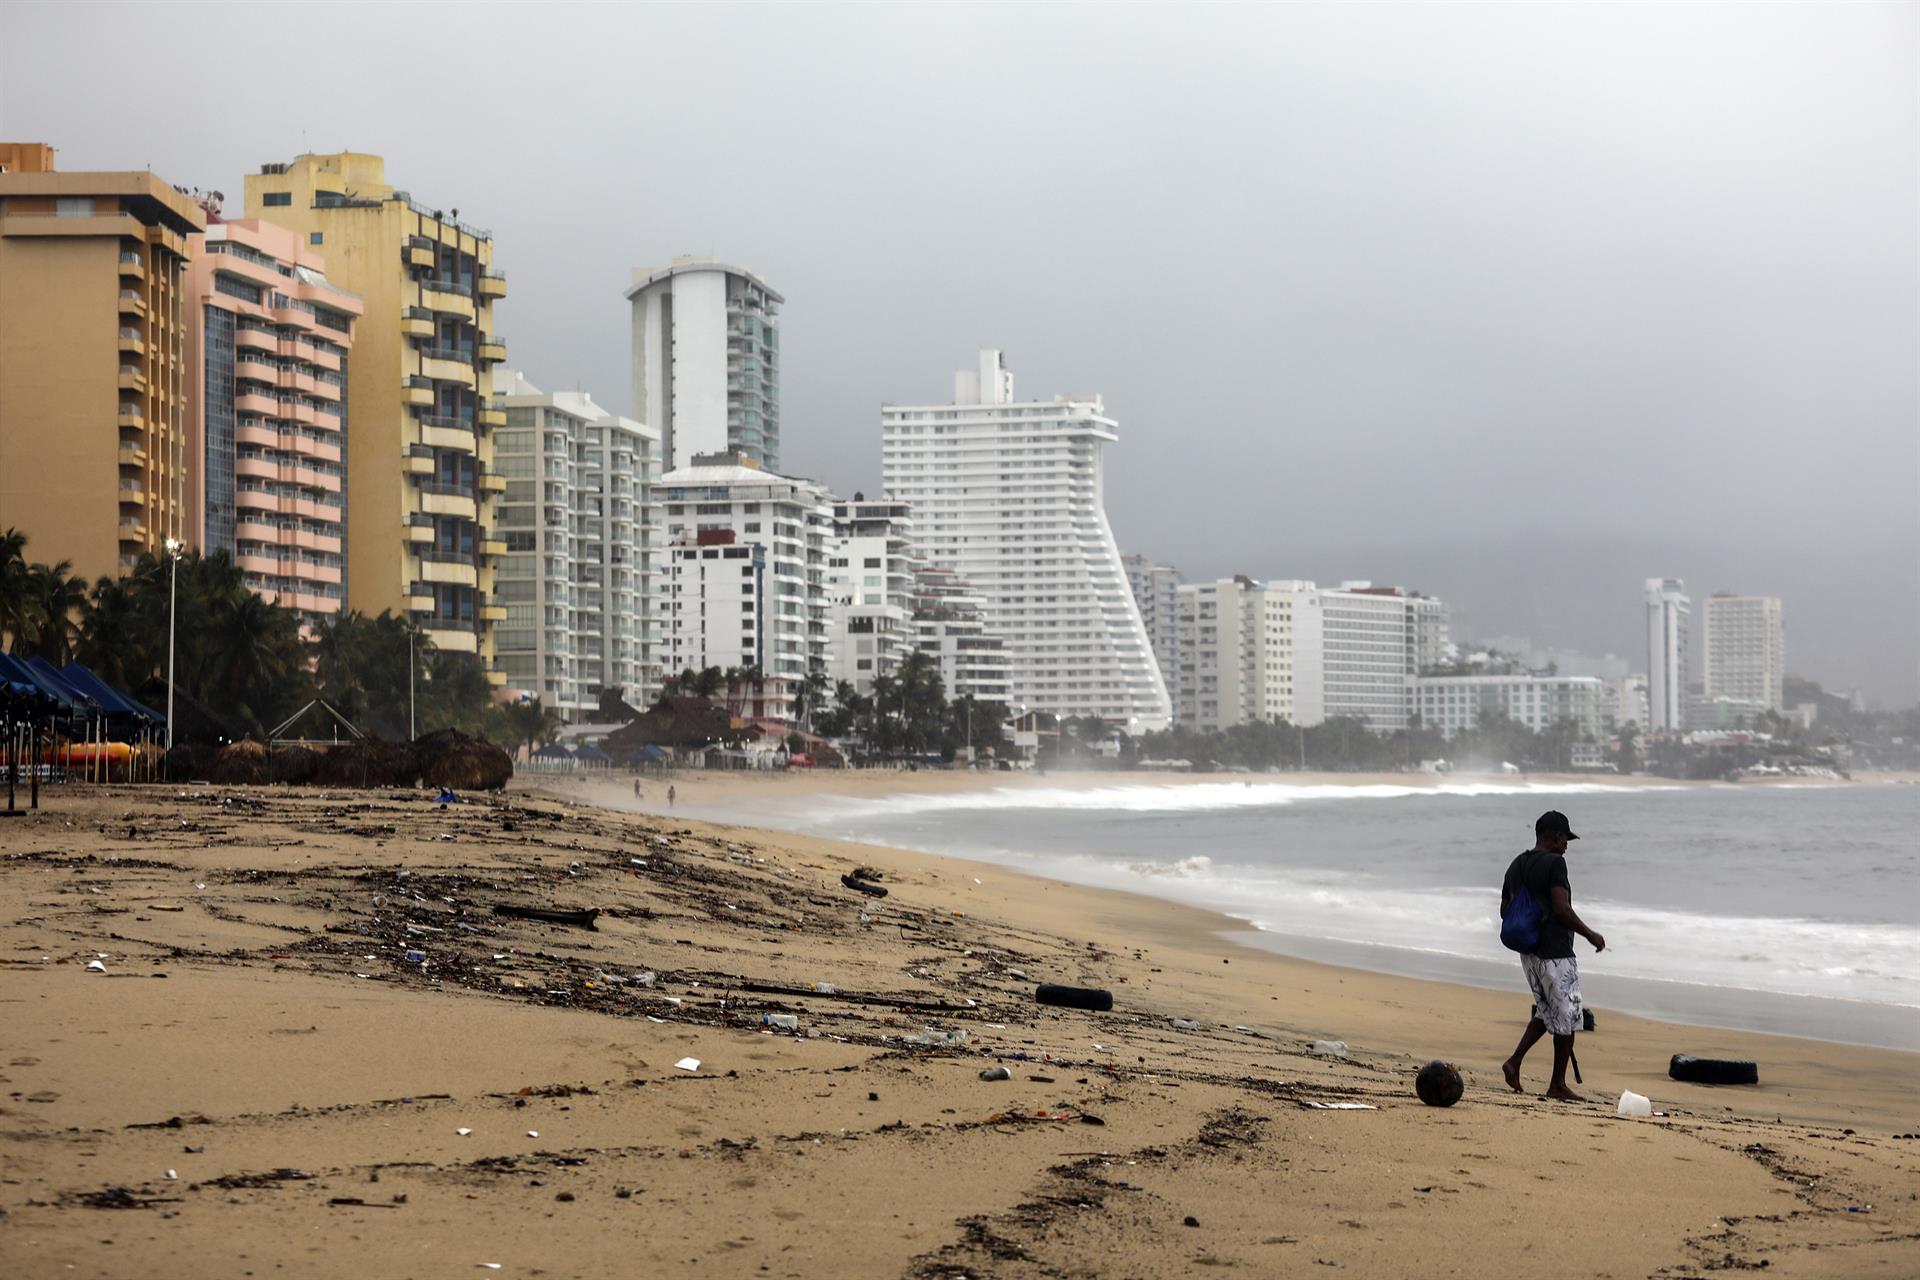 Una persona camina por una playa llena de basura debido a las fuertes lluvias en Acapulco, estado de Guerrero (México). Imagen de archivo. EFE/ David Guzmán
